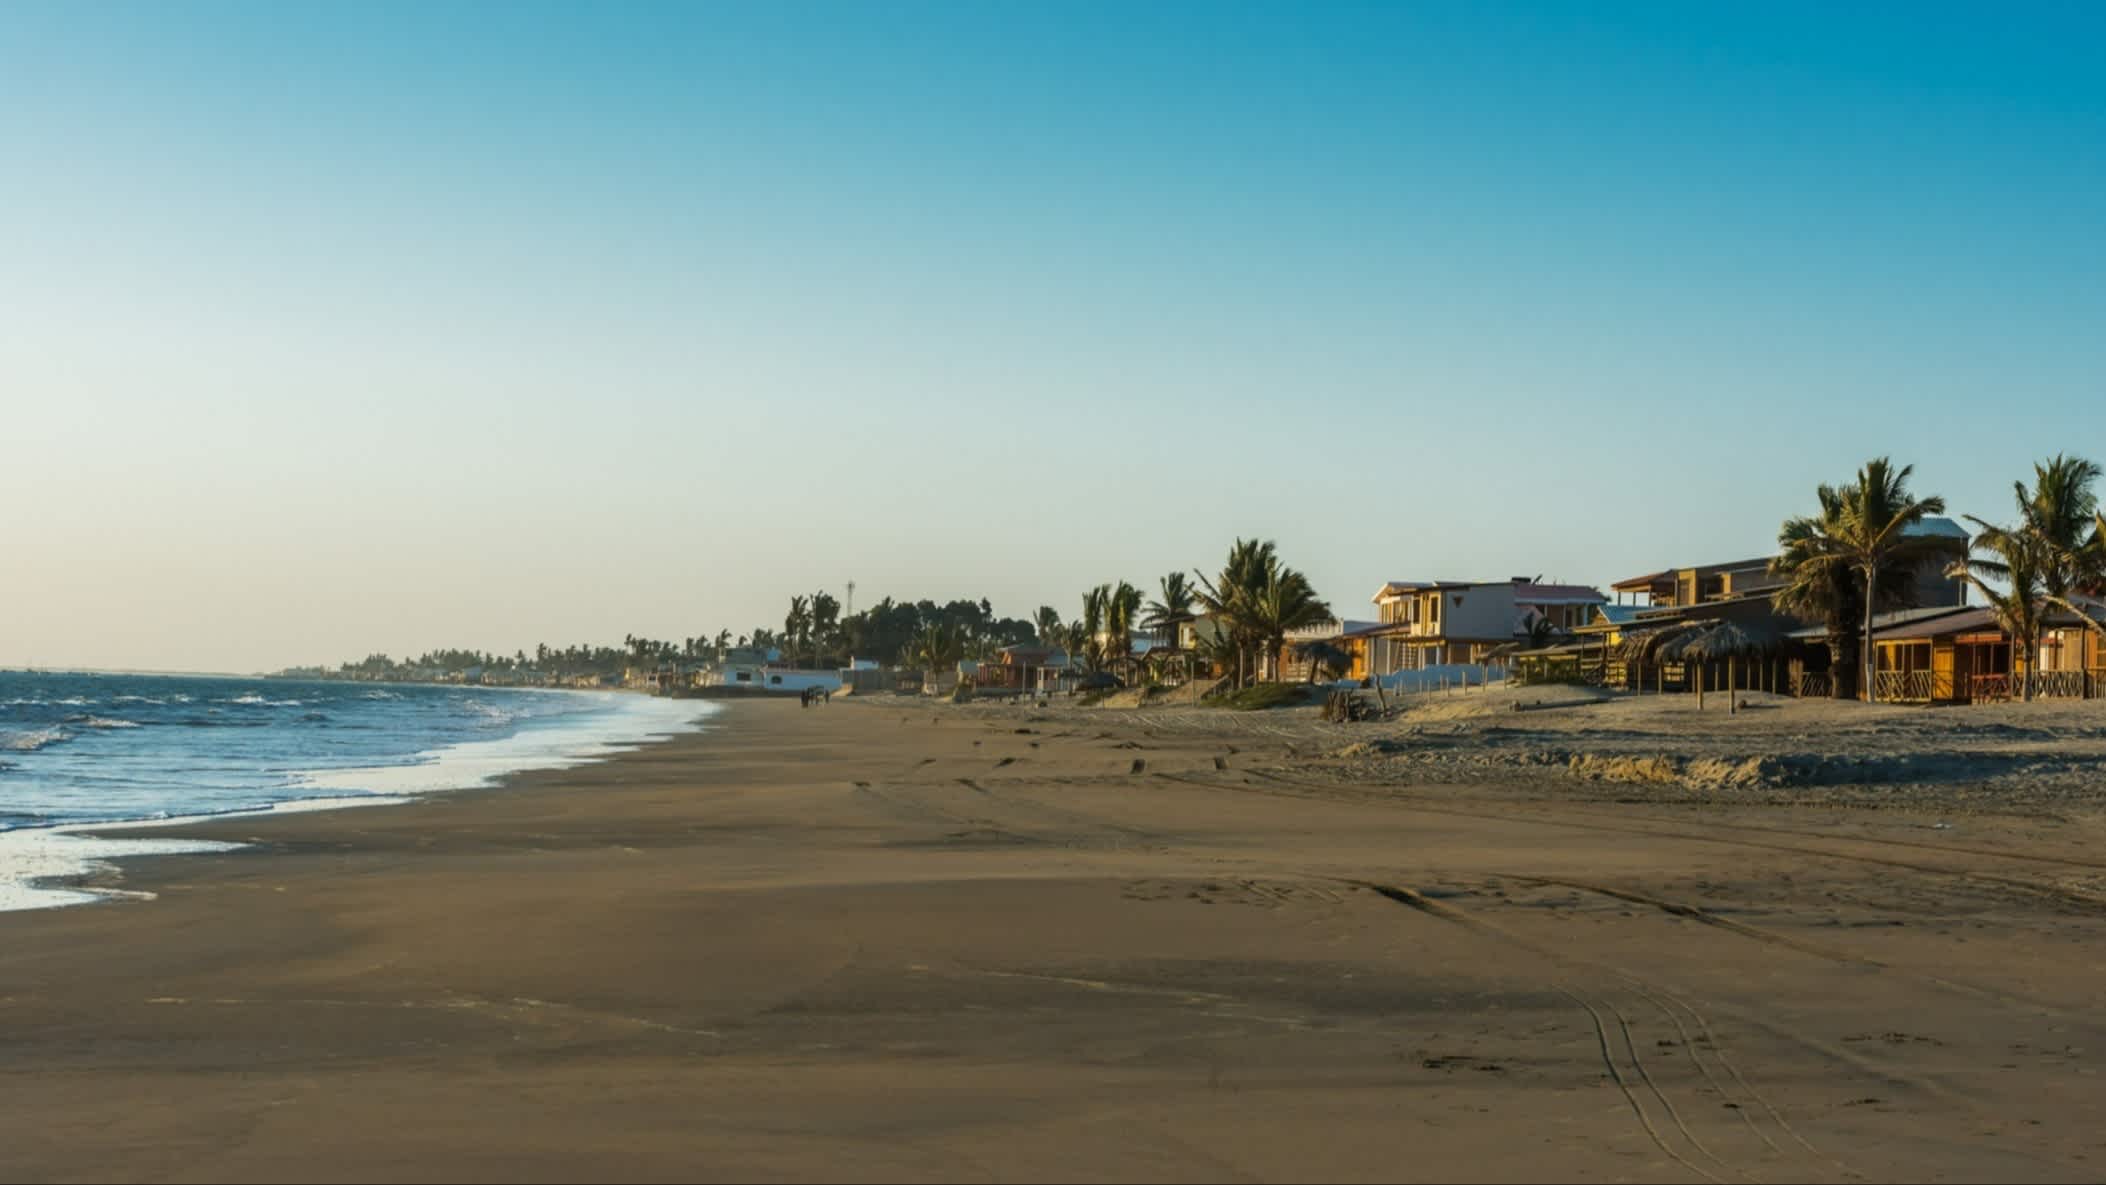 Piura Strand in Colan, Peru mit Blick auf den dunklen Sand des Strandes, bei blauem Himmel und mit Villen und Palmen am Rand.